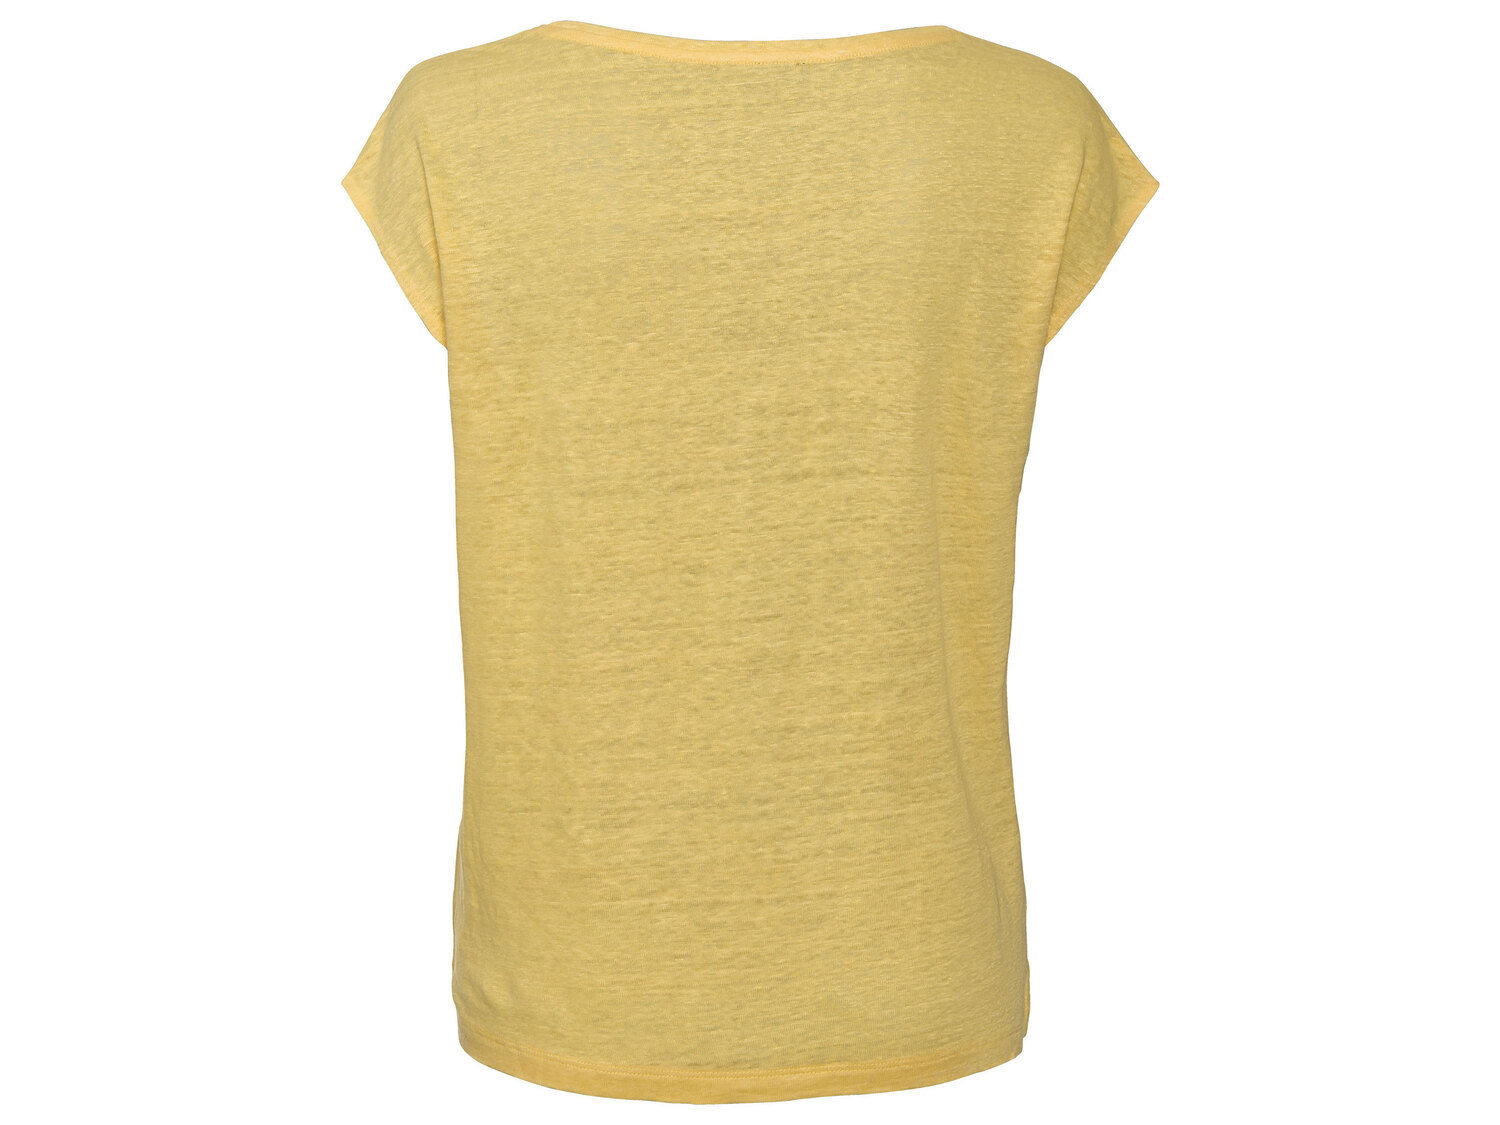 Koszulka damska z lnu Esmara, cena 39,99 PLN 
- rozmiary: XS-L
- 100% lnu
Dostępne ...